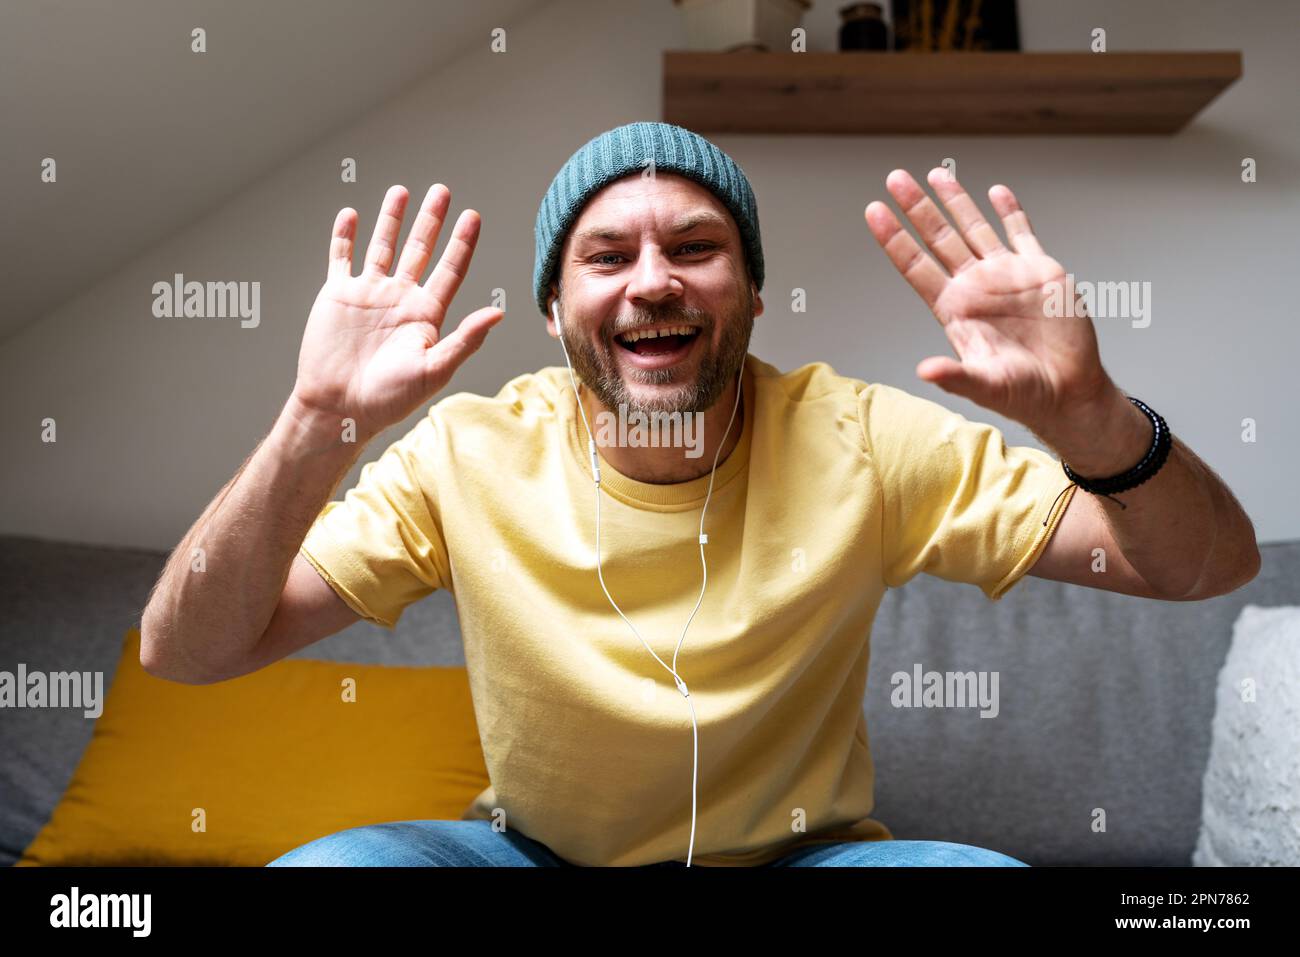 L'uomo sorride e agita le mani durante la riunione online. Foto Stock